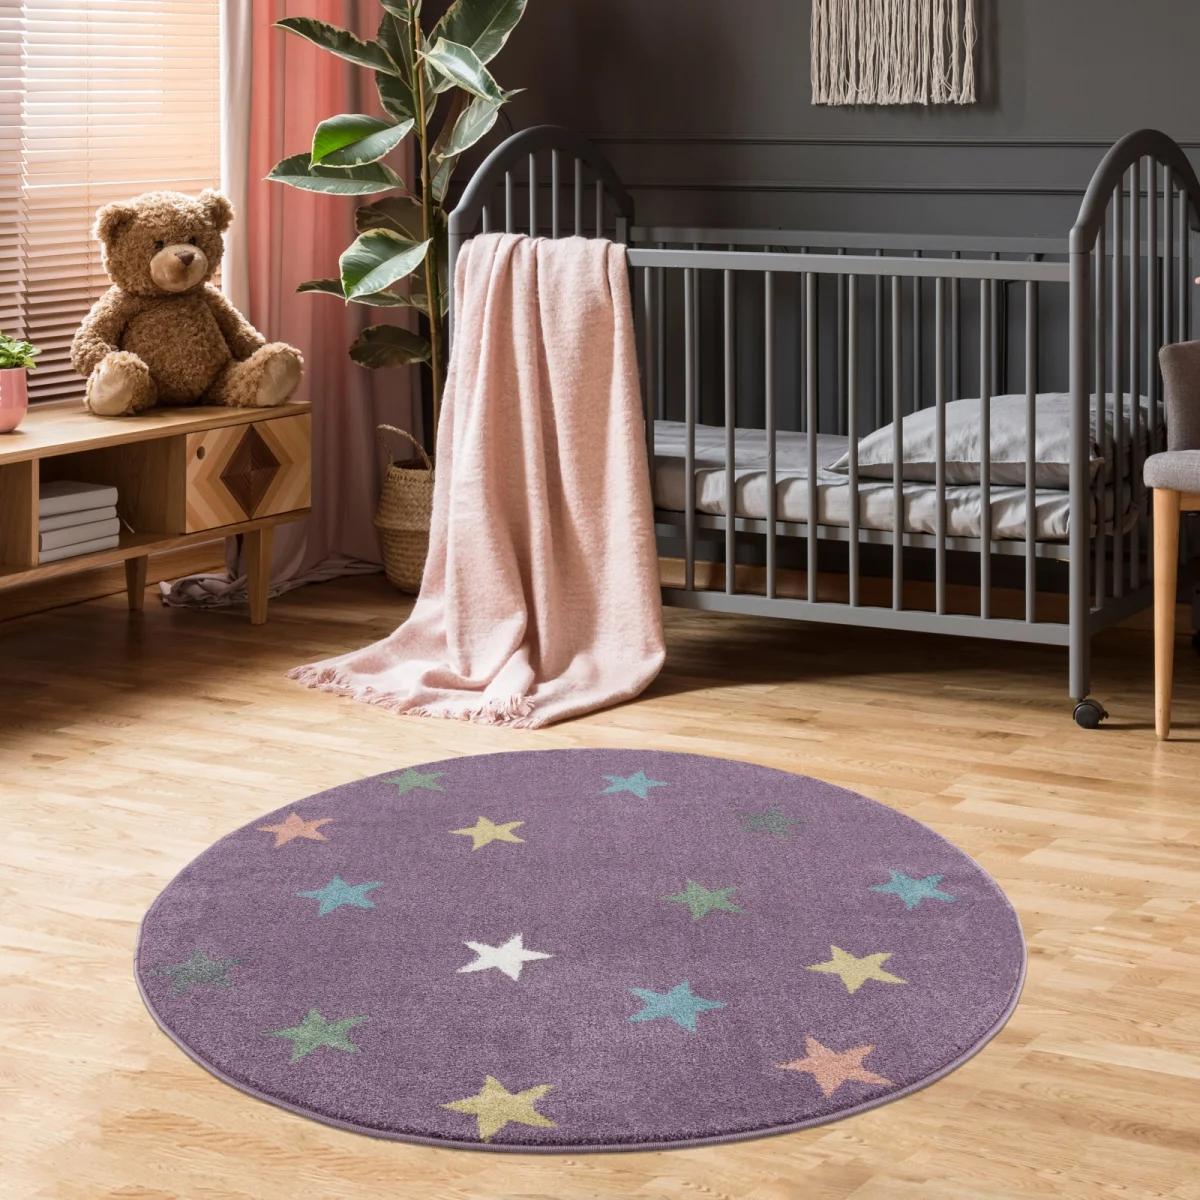 Dywan dziecięcy okrągły Violet Stars Round 160 cm do pokoju dziecięcego fioletowy w gwiazdki nr. 1